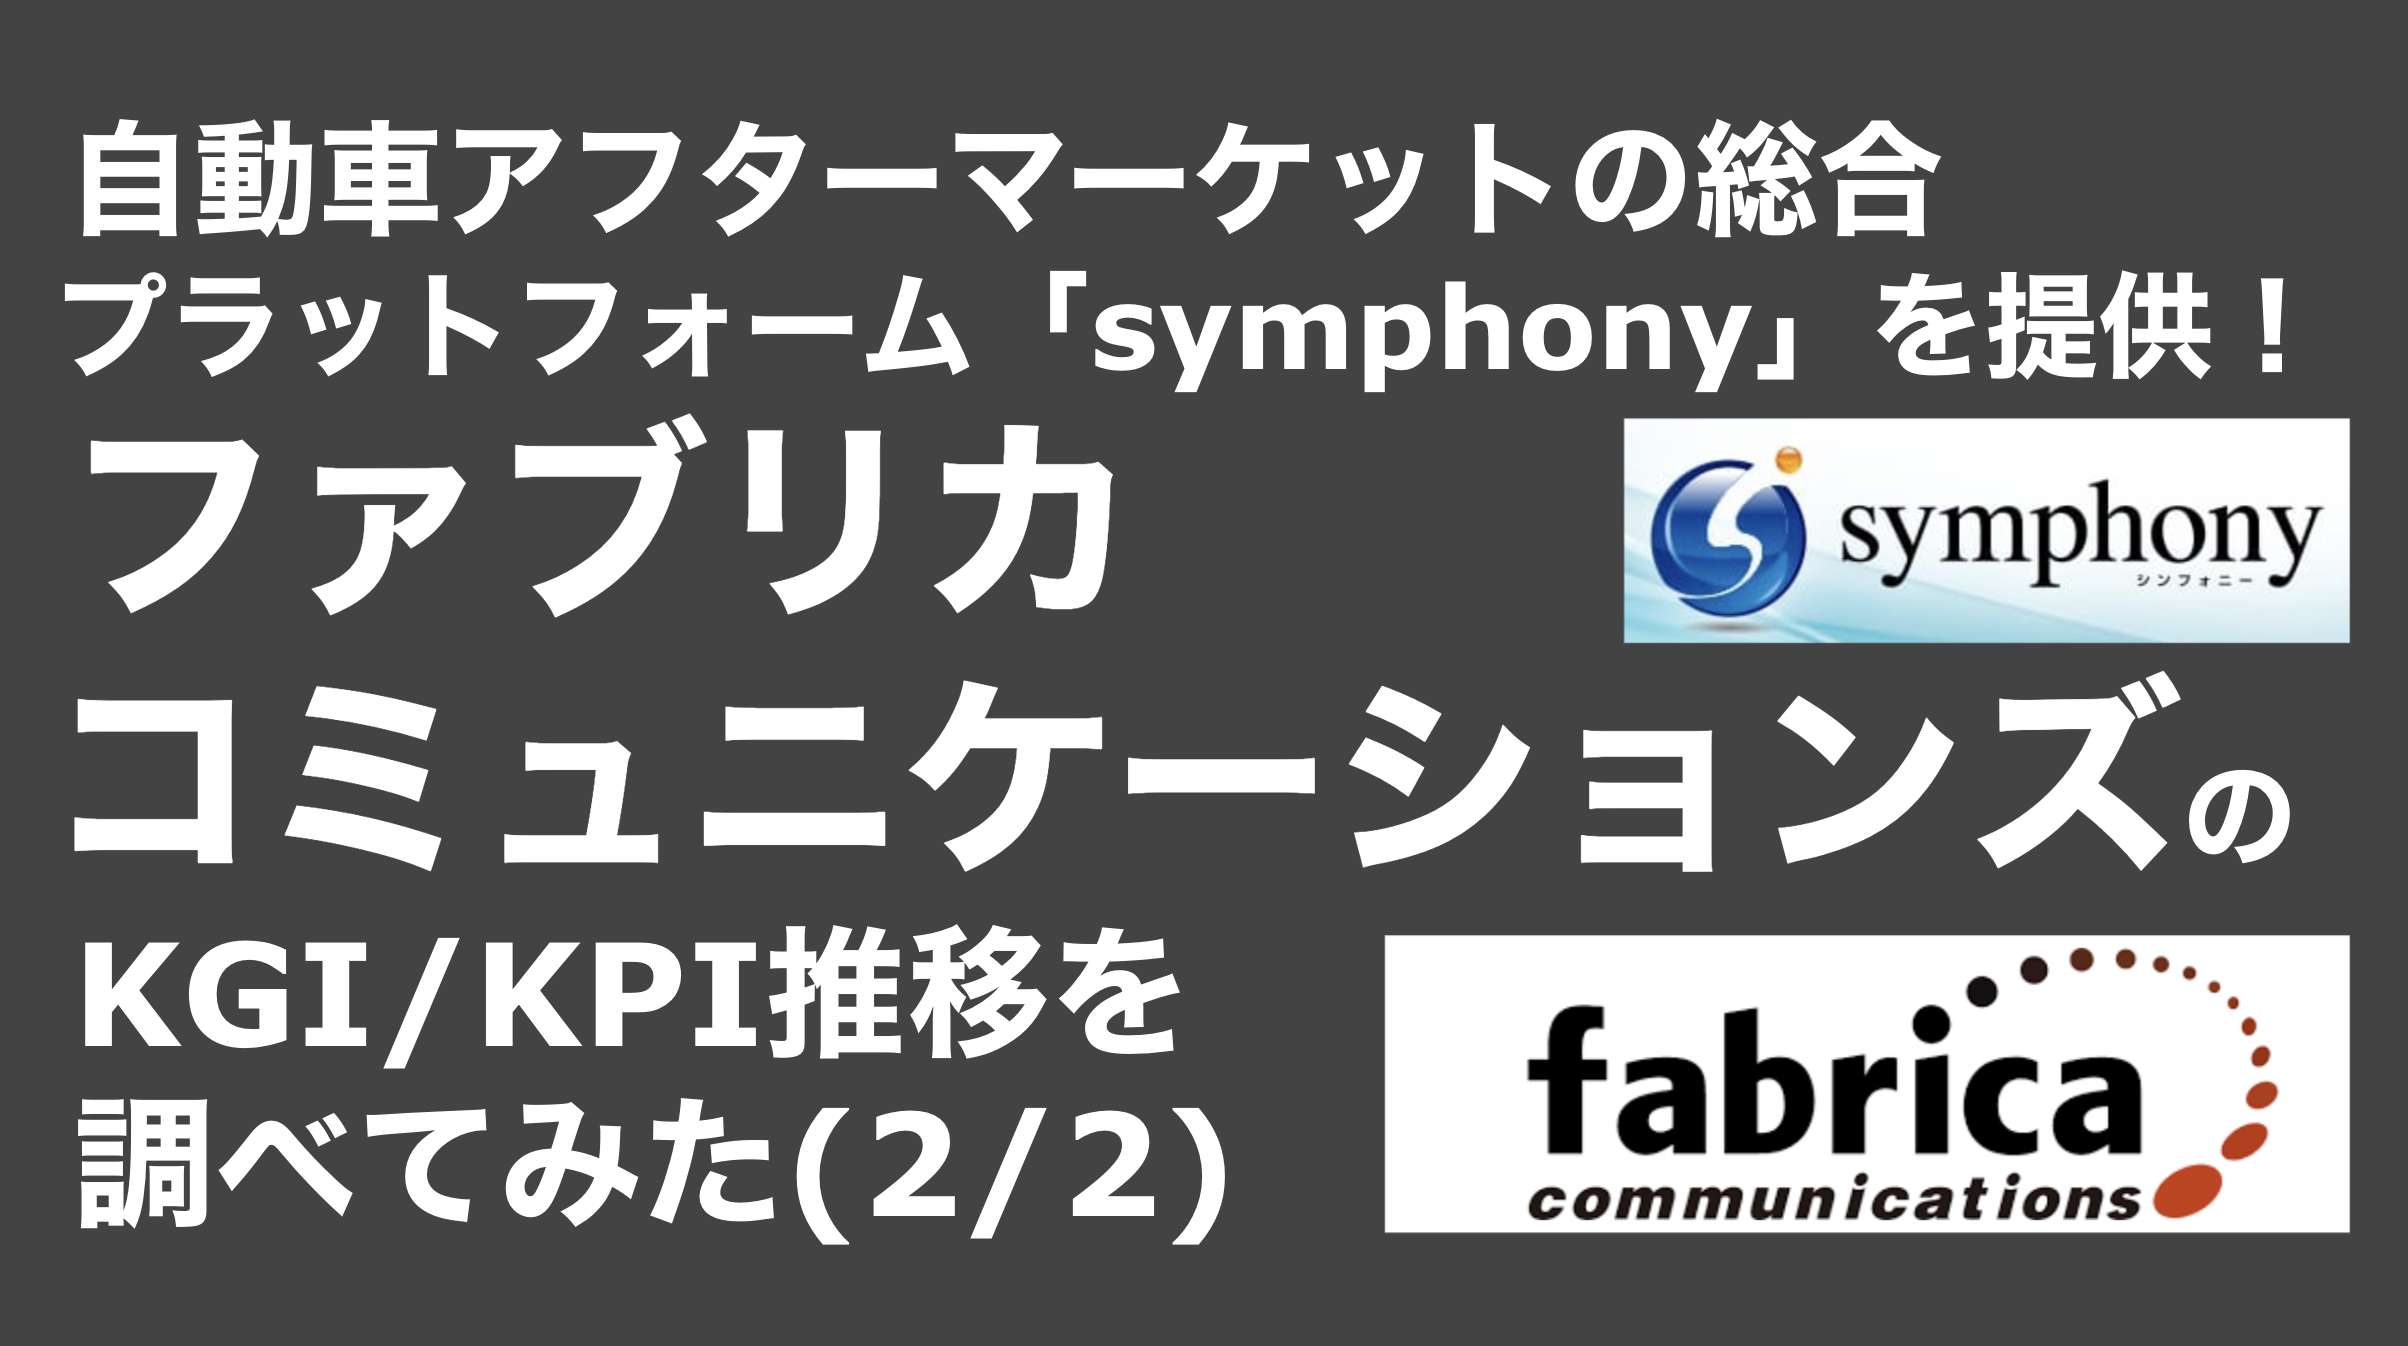 saaslife_ 自動車アフターマーケットの総合プラットフォーム「symphony」を提供！ファブリカコミュニケーションズのKGI/KPI推移を調べてみた(2/2)